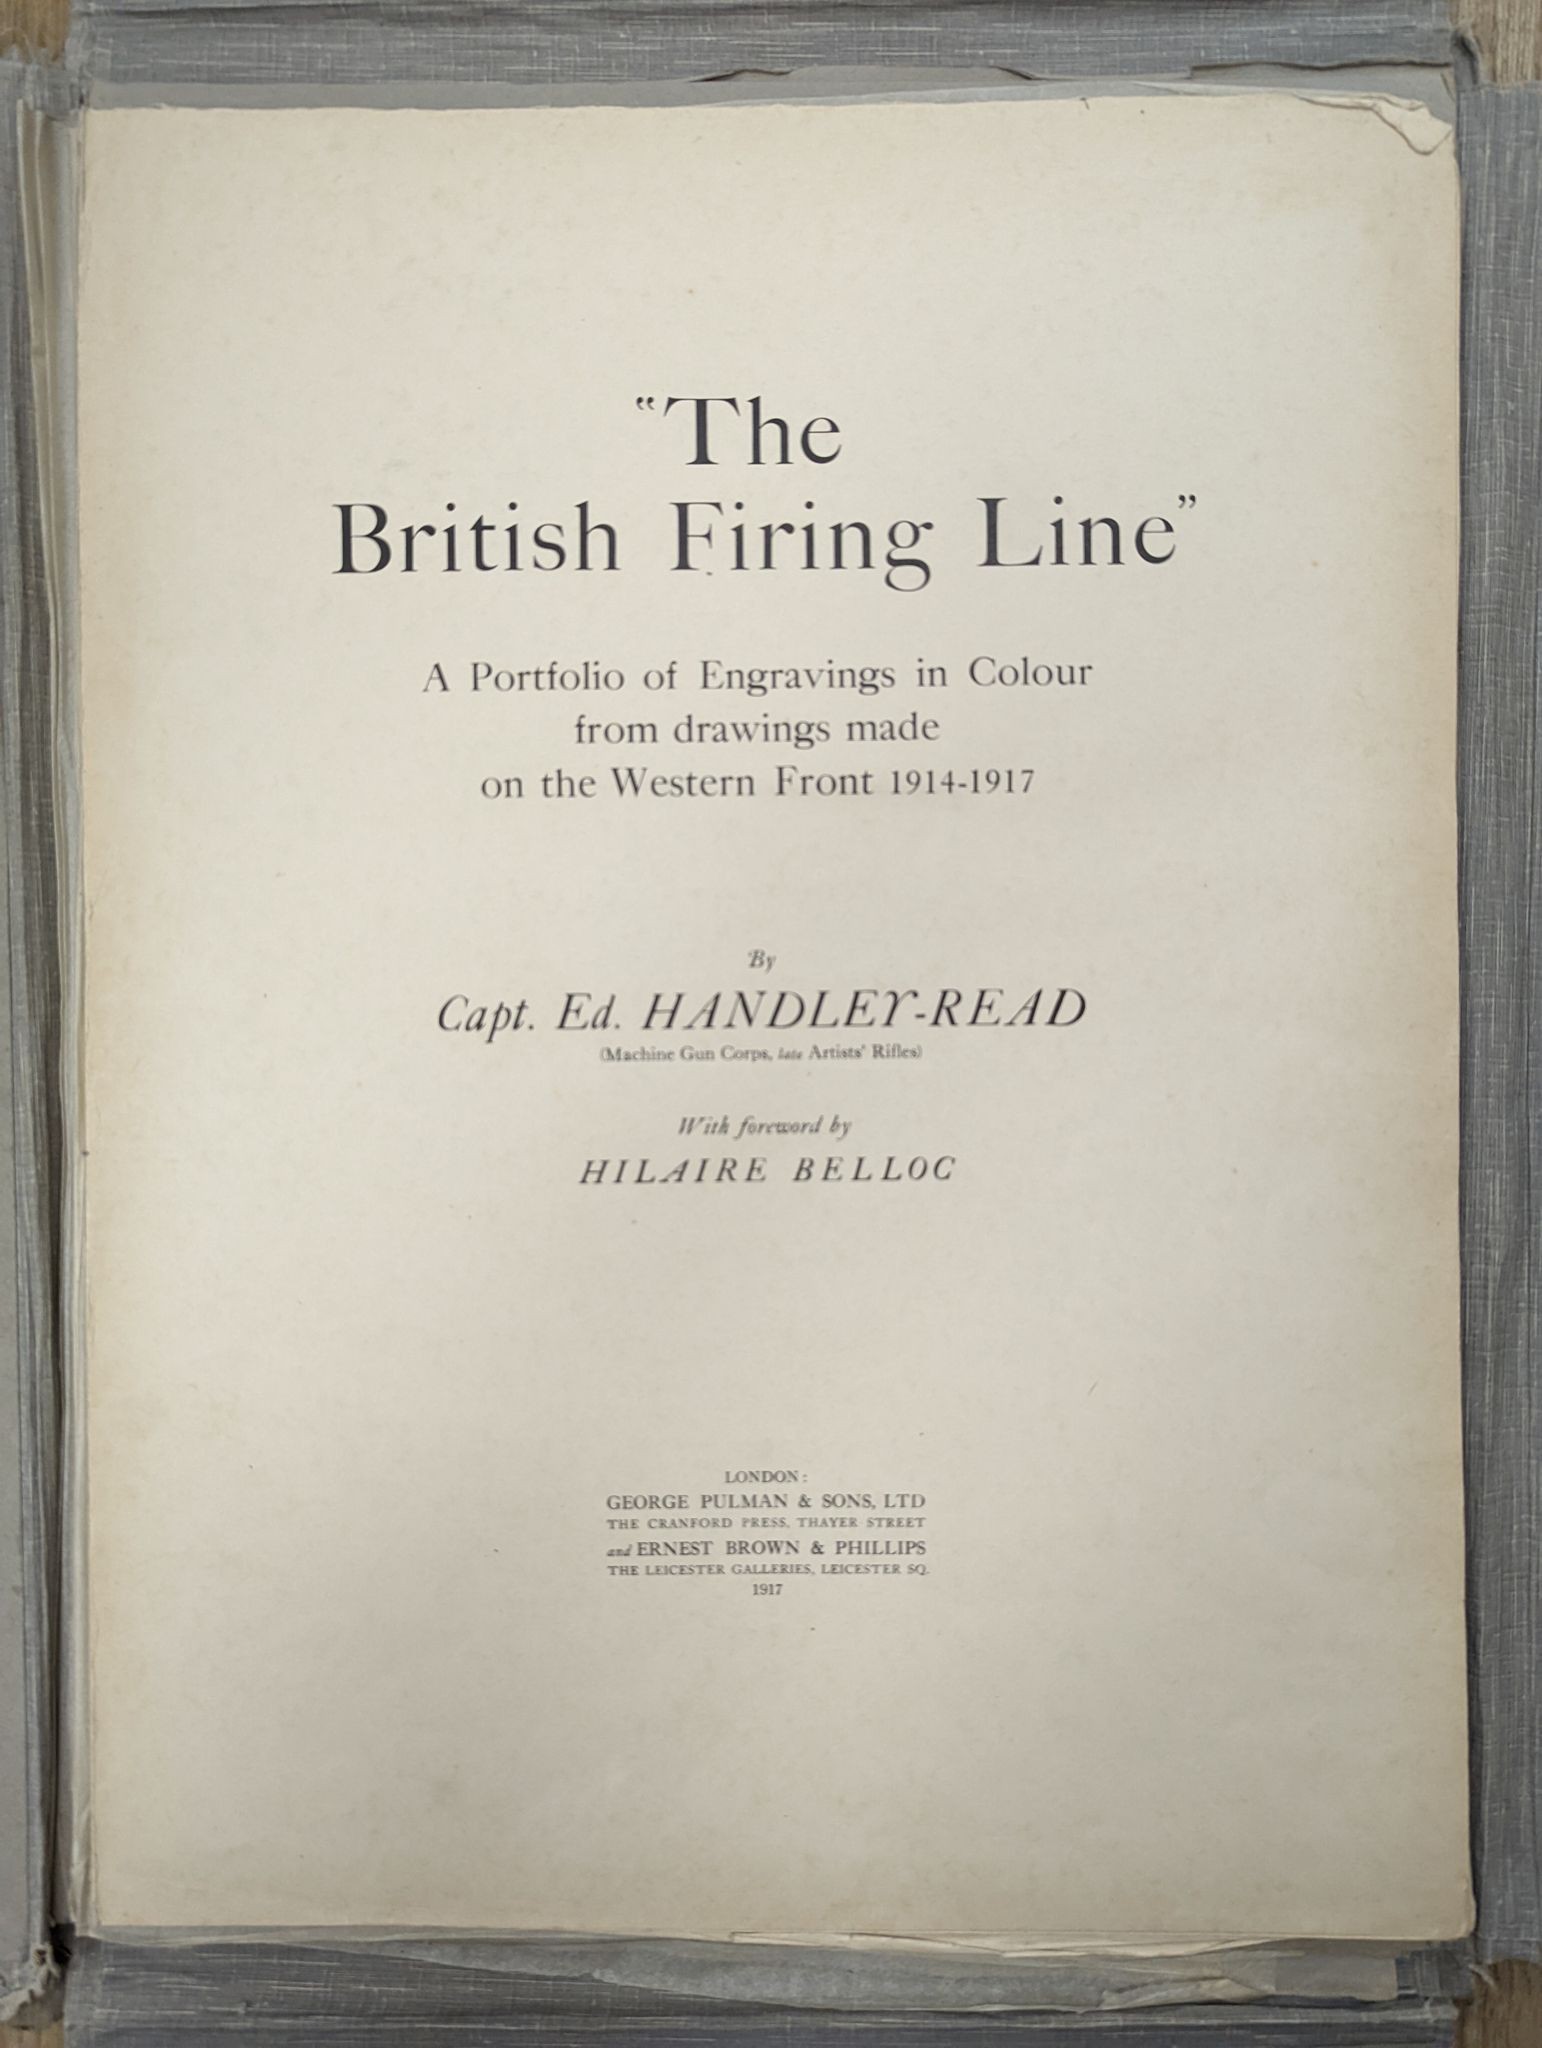 Edward Handley-Read, folio, 'The British Firing Line', 1917, 55 x 40cm